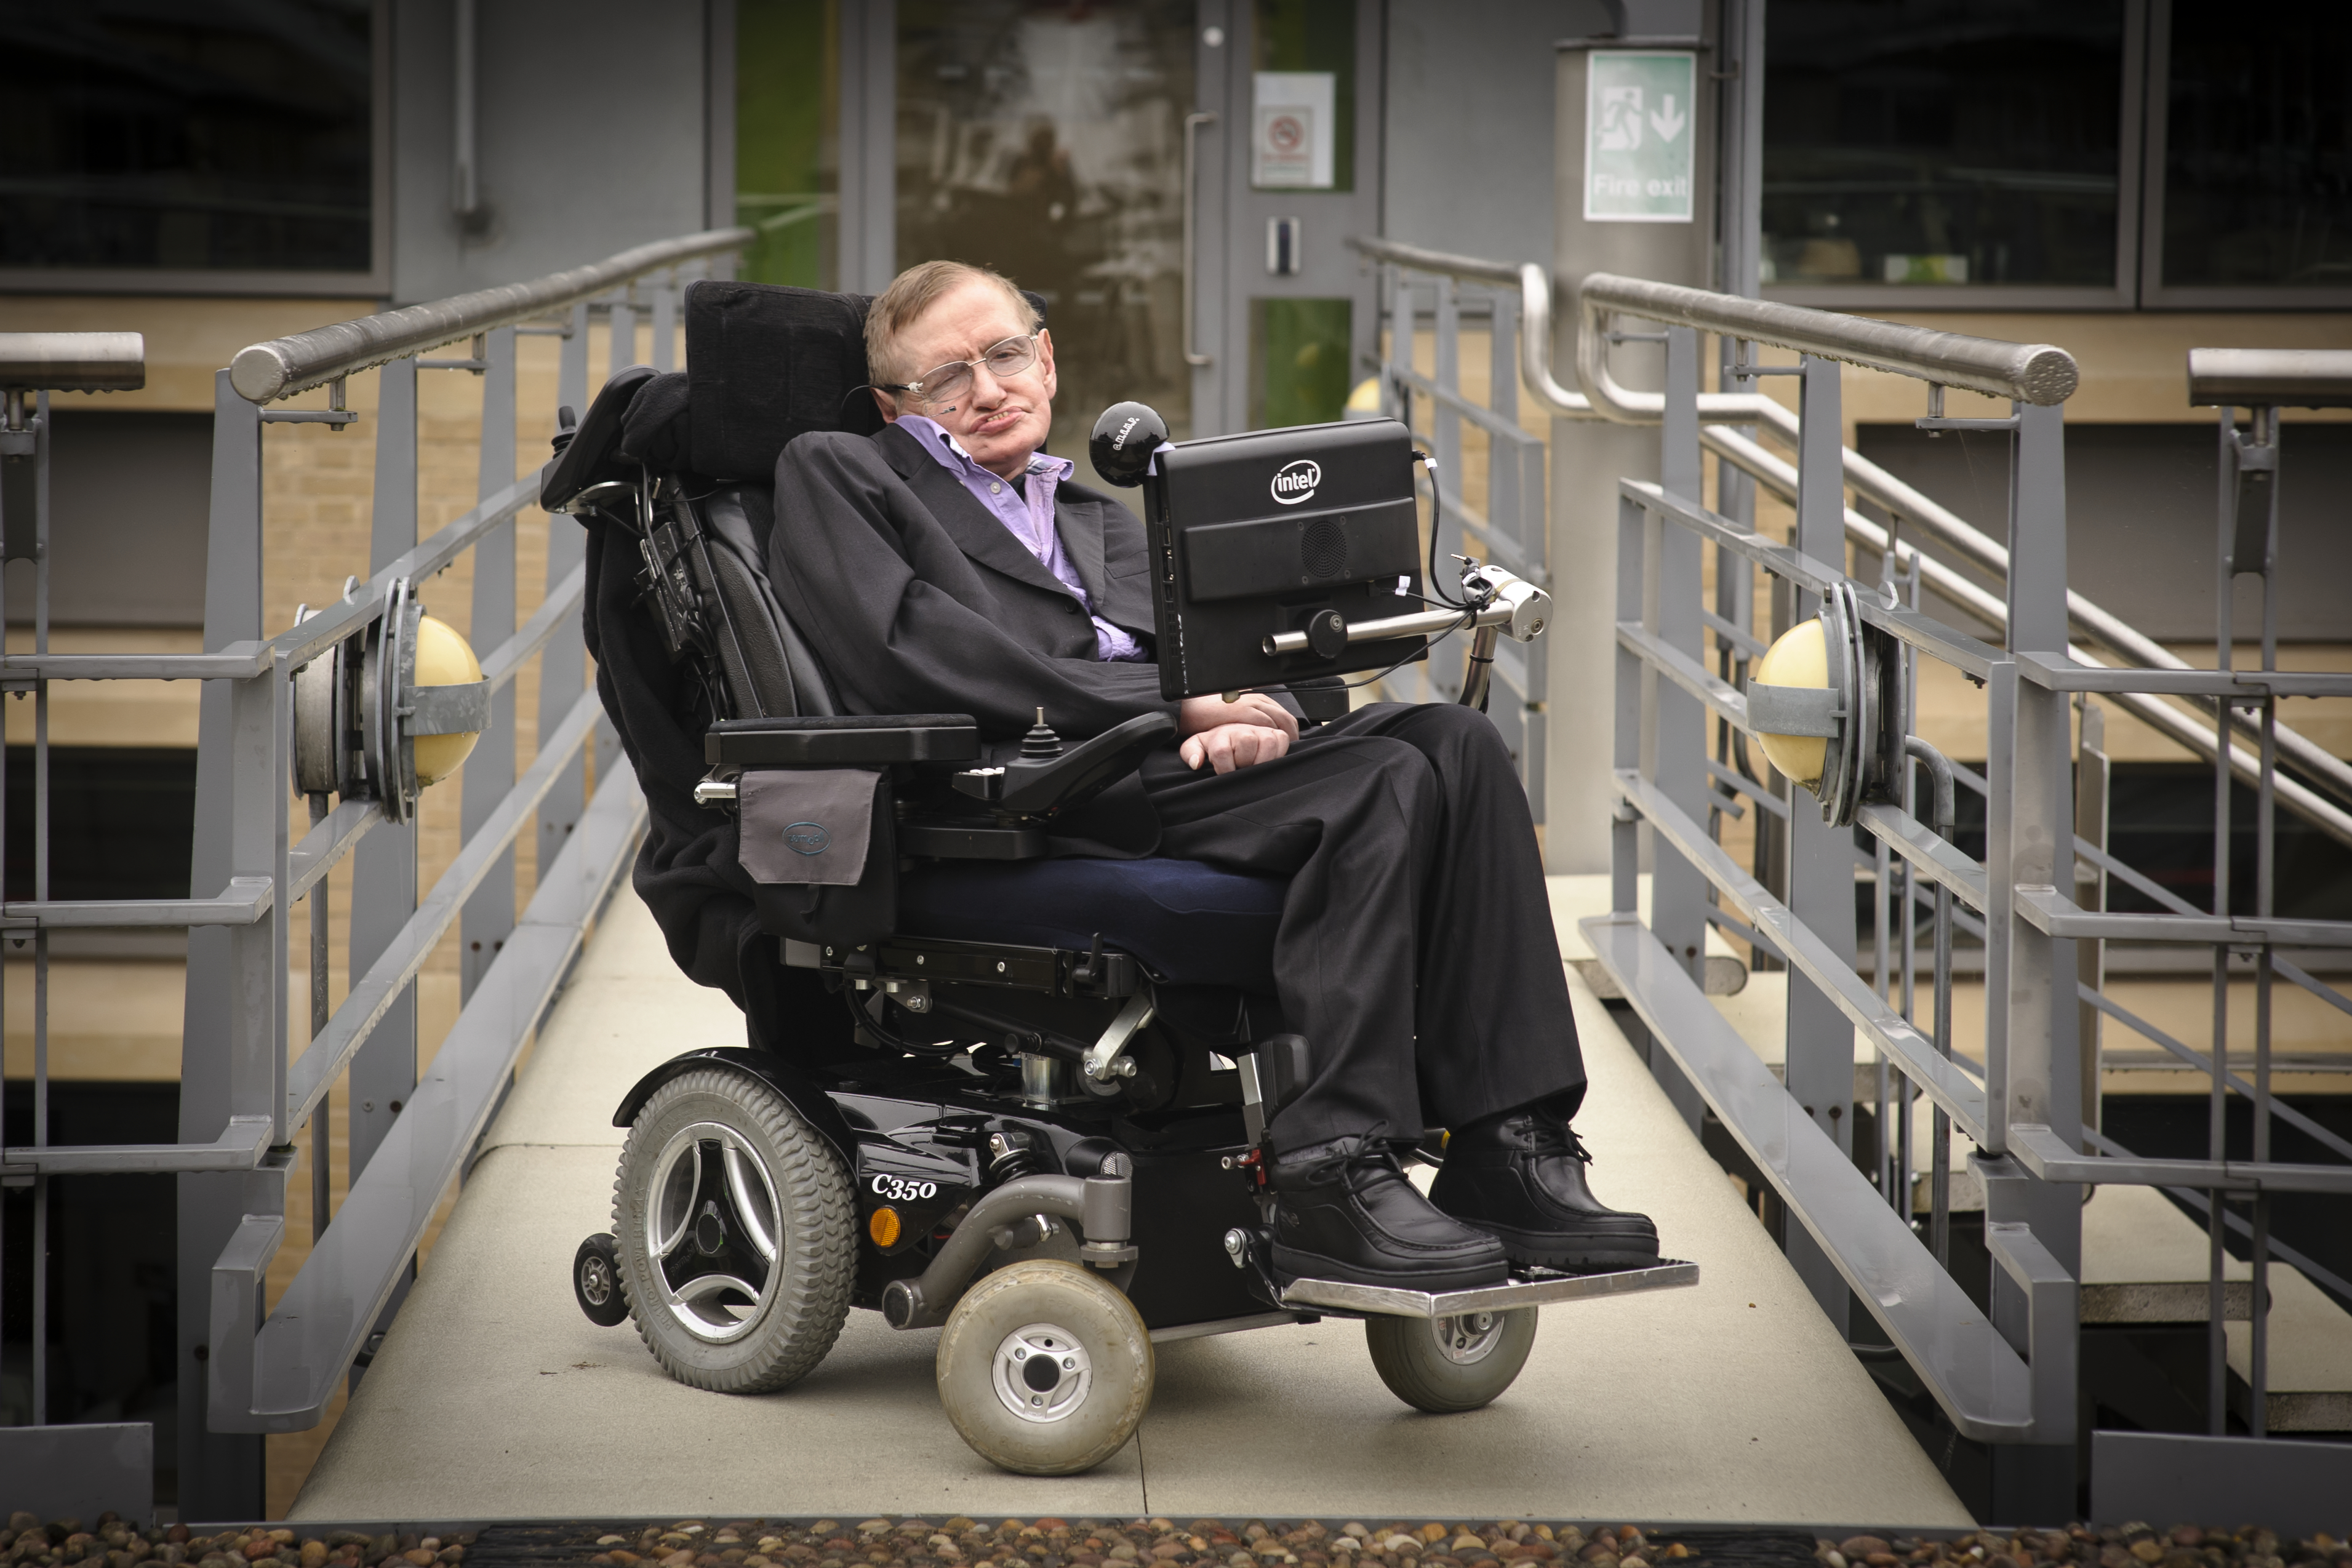 5 Pernyataan Stephen Hawking yang mengejutkan dan kontroversial